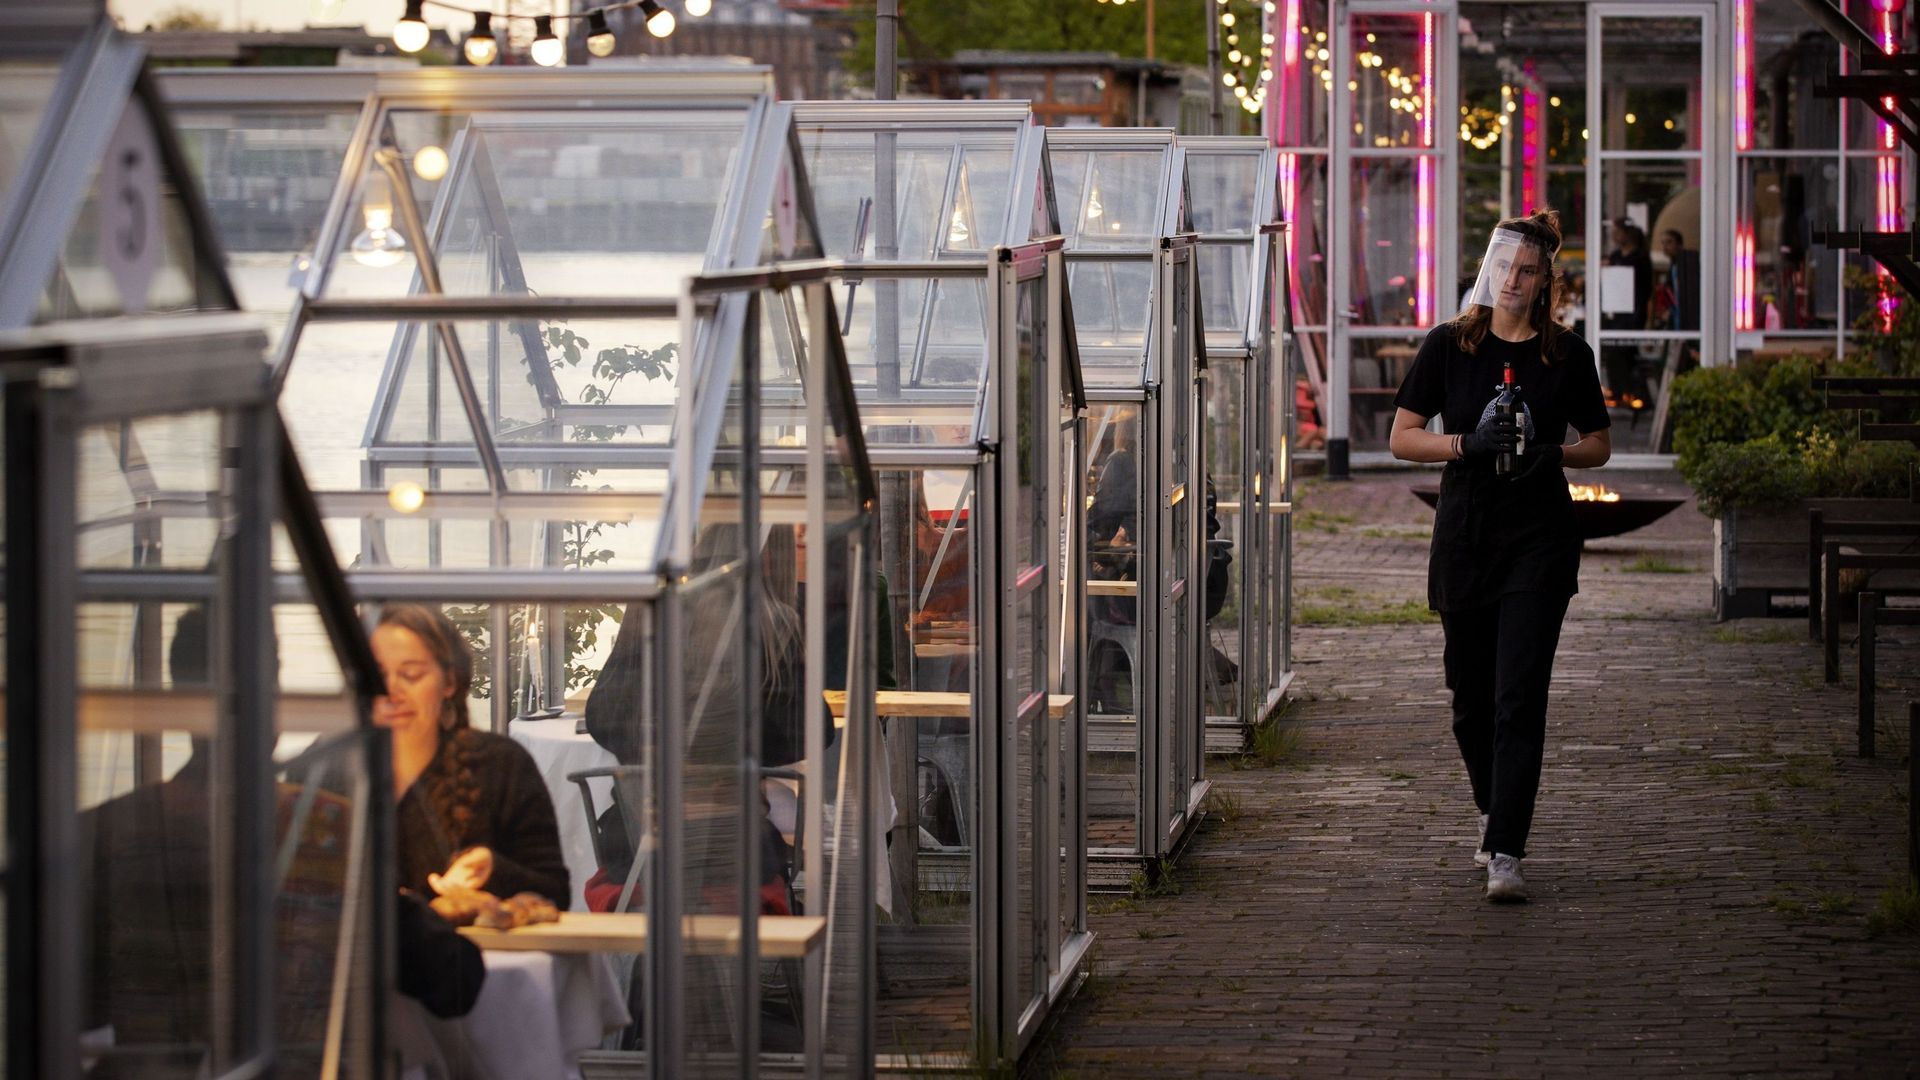 Un centre culturel d'Amsterdam a eu l'idée d'utiliser de petites serres, habituellement consacrées à des projets artistiques, pour offrir aux futurs clients de son restaurant un coin repas privé.